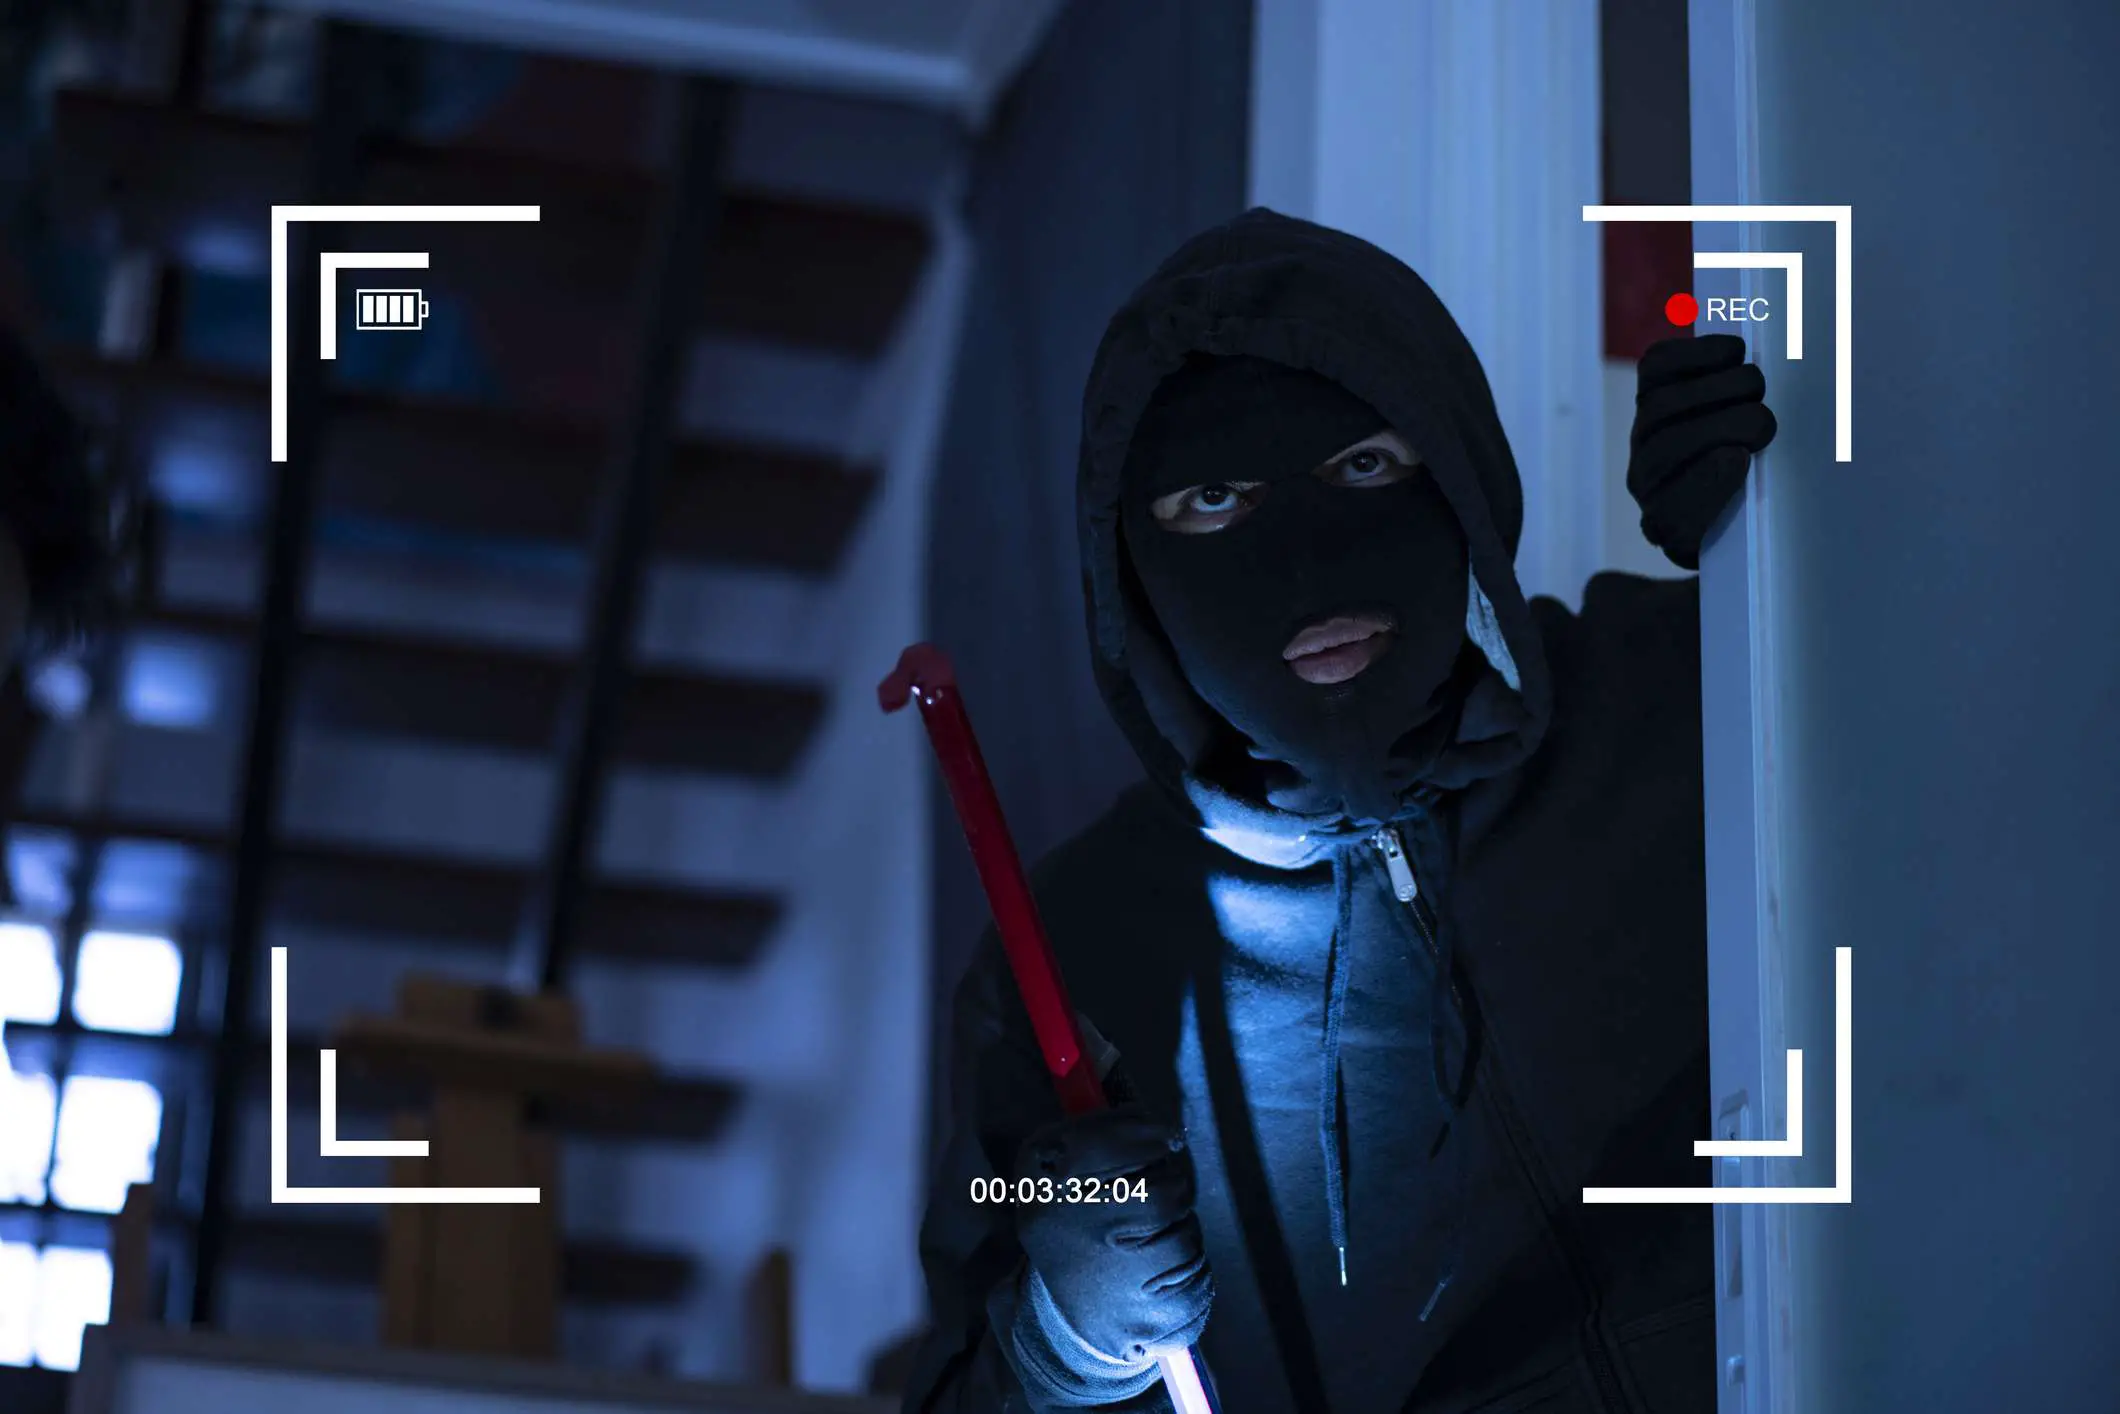 Imagem CCTV de um ladrão entrando em casa pela janela com um pé-de-cabra